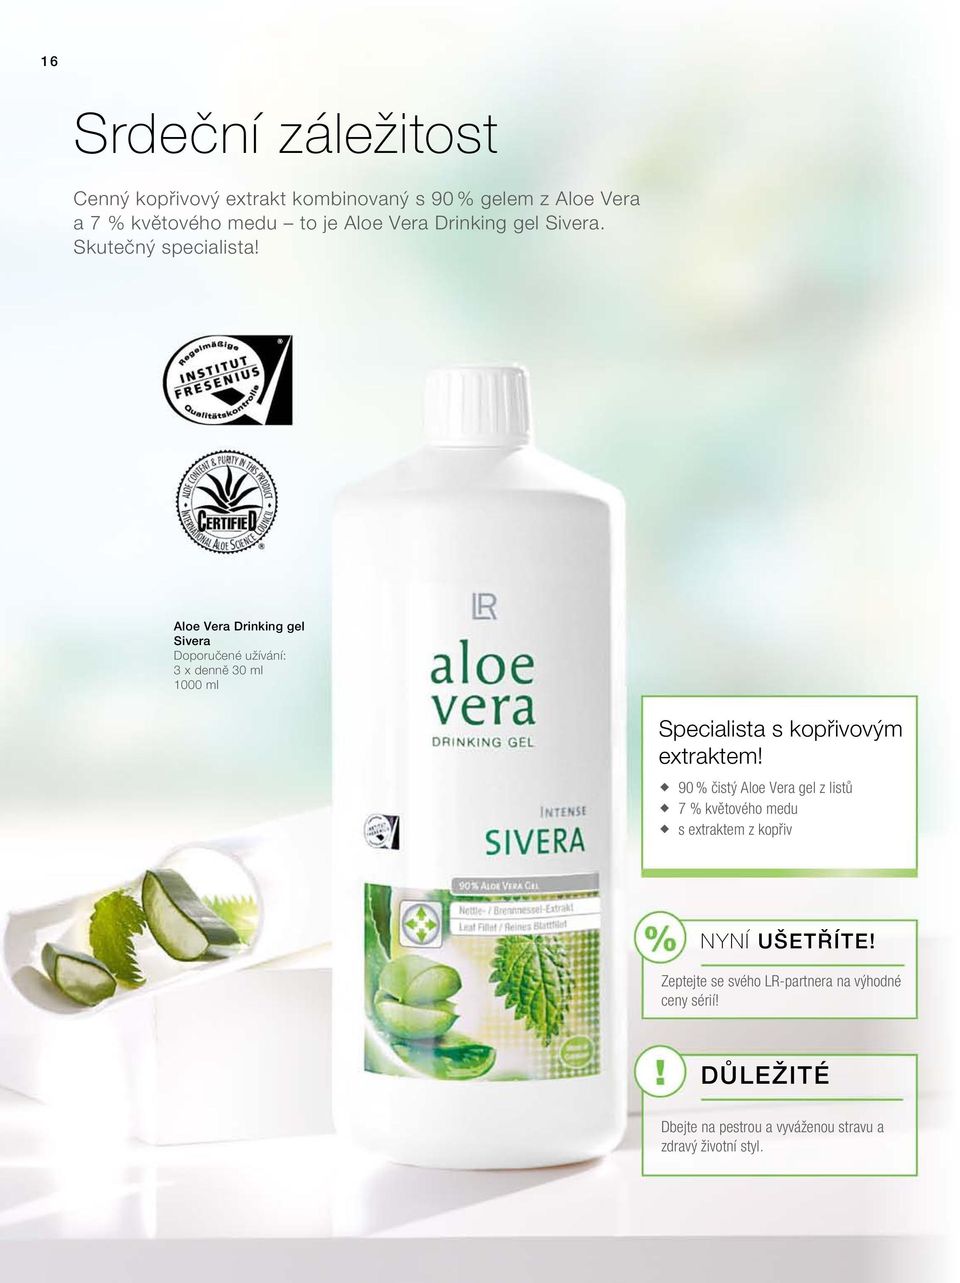 Aloe Vera Drinking gel Sivera Doporučené užívání: 3 x denně 30 ml 1000 ml Specialista s kopřivovým extraktem!